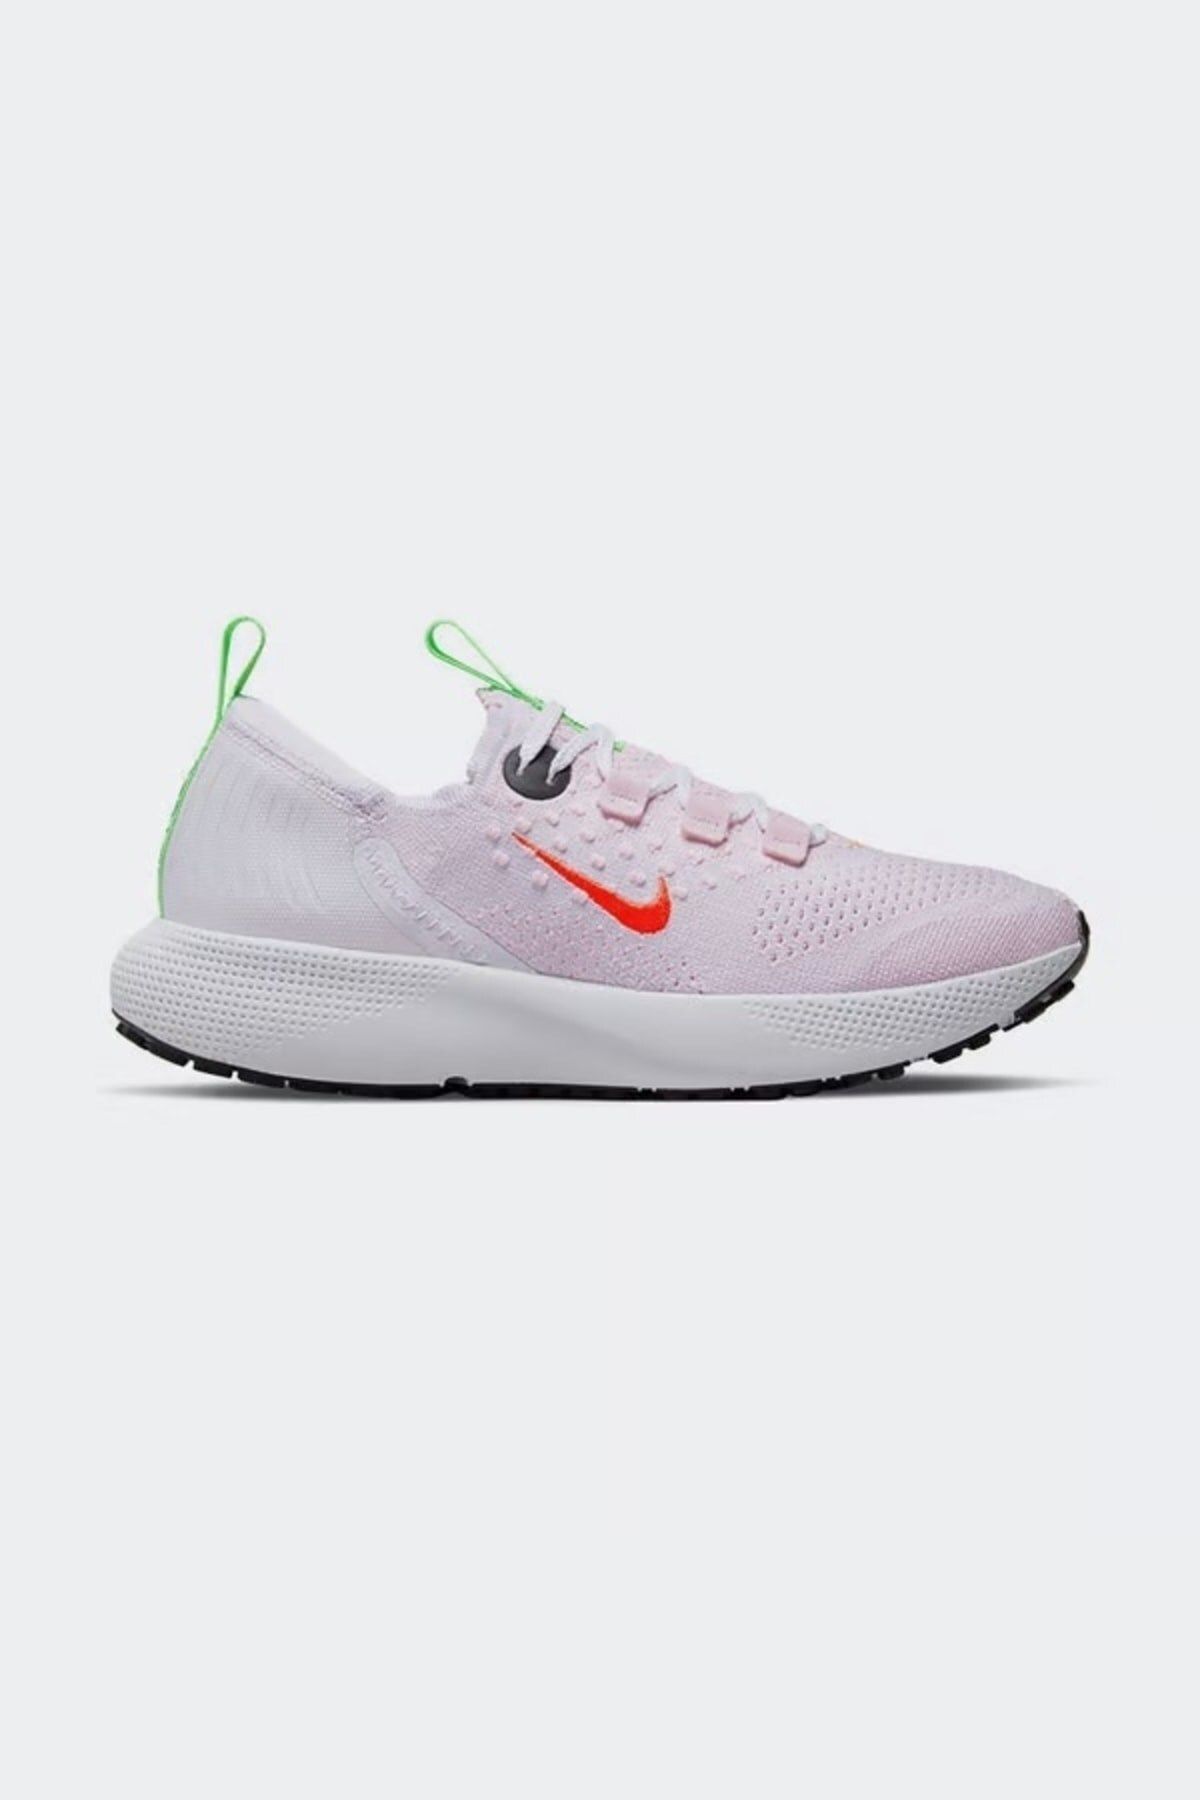 Nike LİLA Escape Run Flyknit Kadın Koşu Ayakkabısı